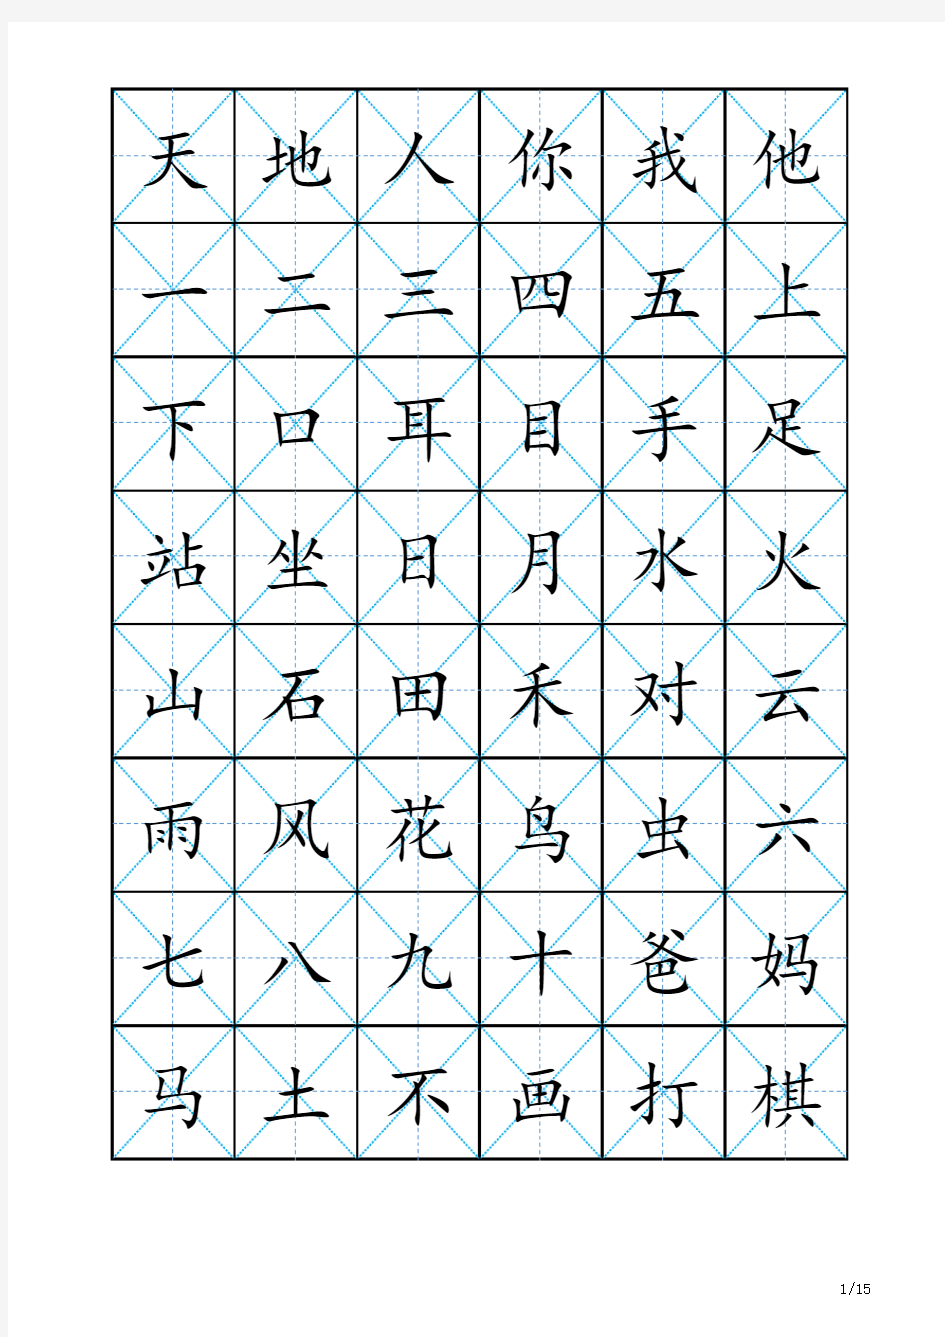 新版人教版语文一年级上下册识字表(702字,田字格,不带拼音版)